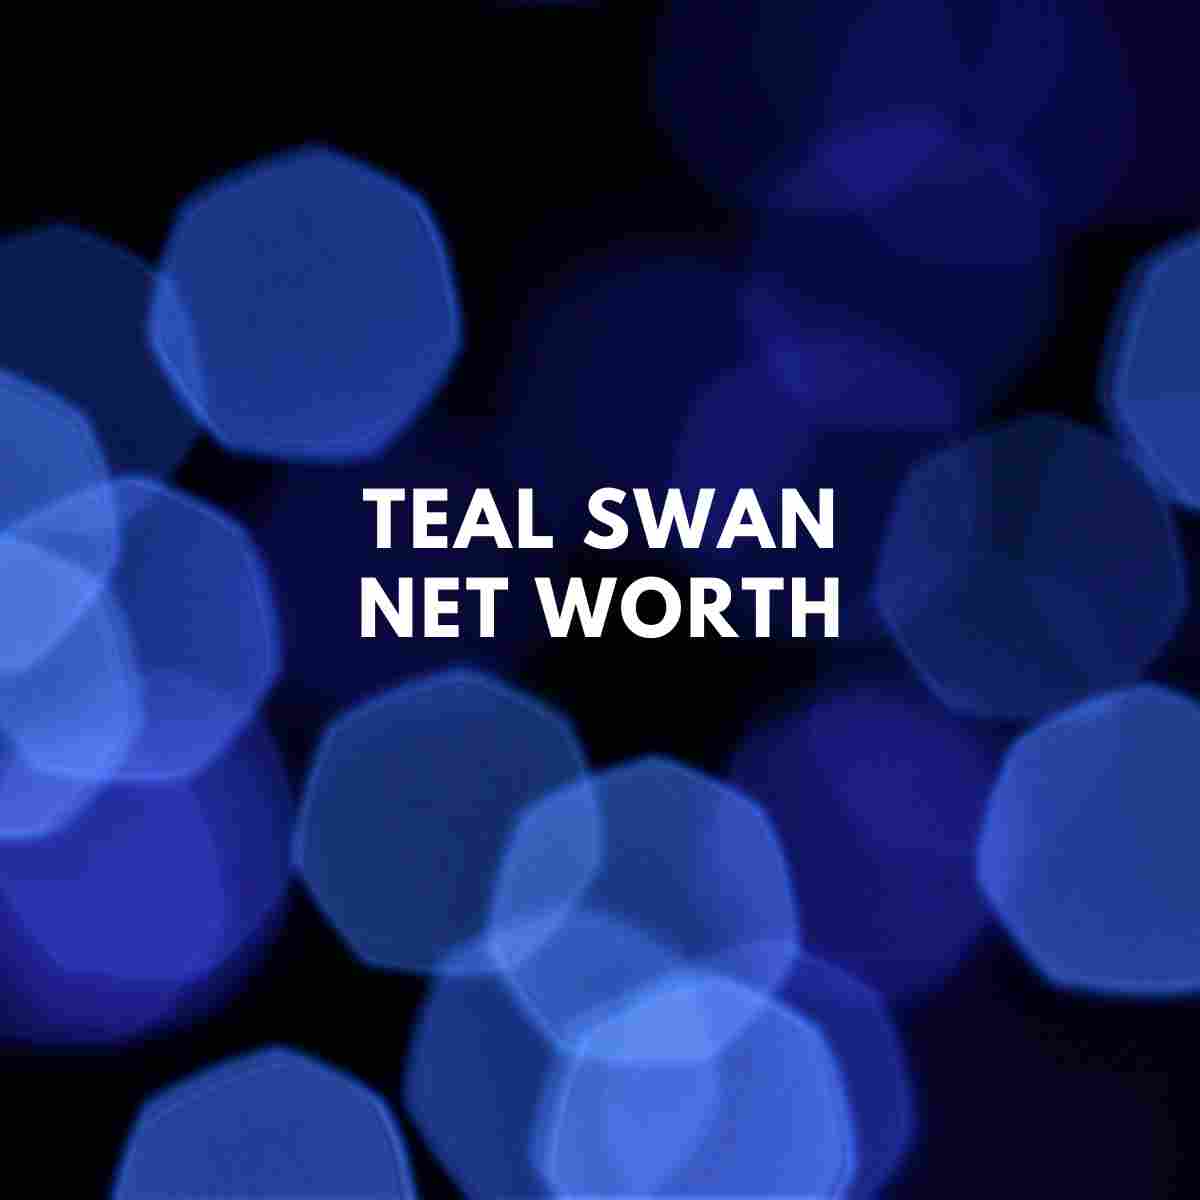 Teal Swan net worth